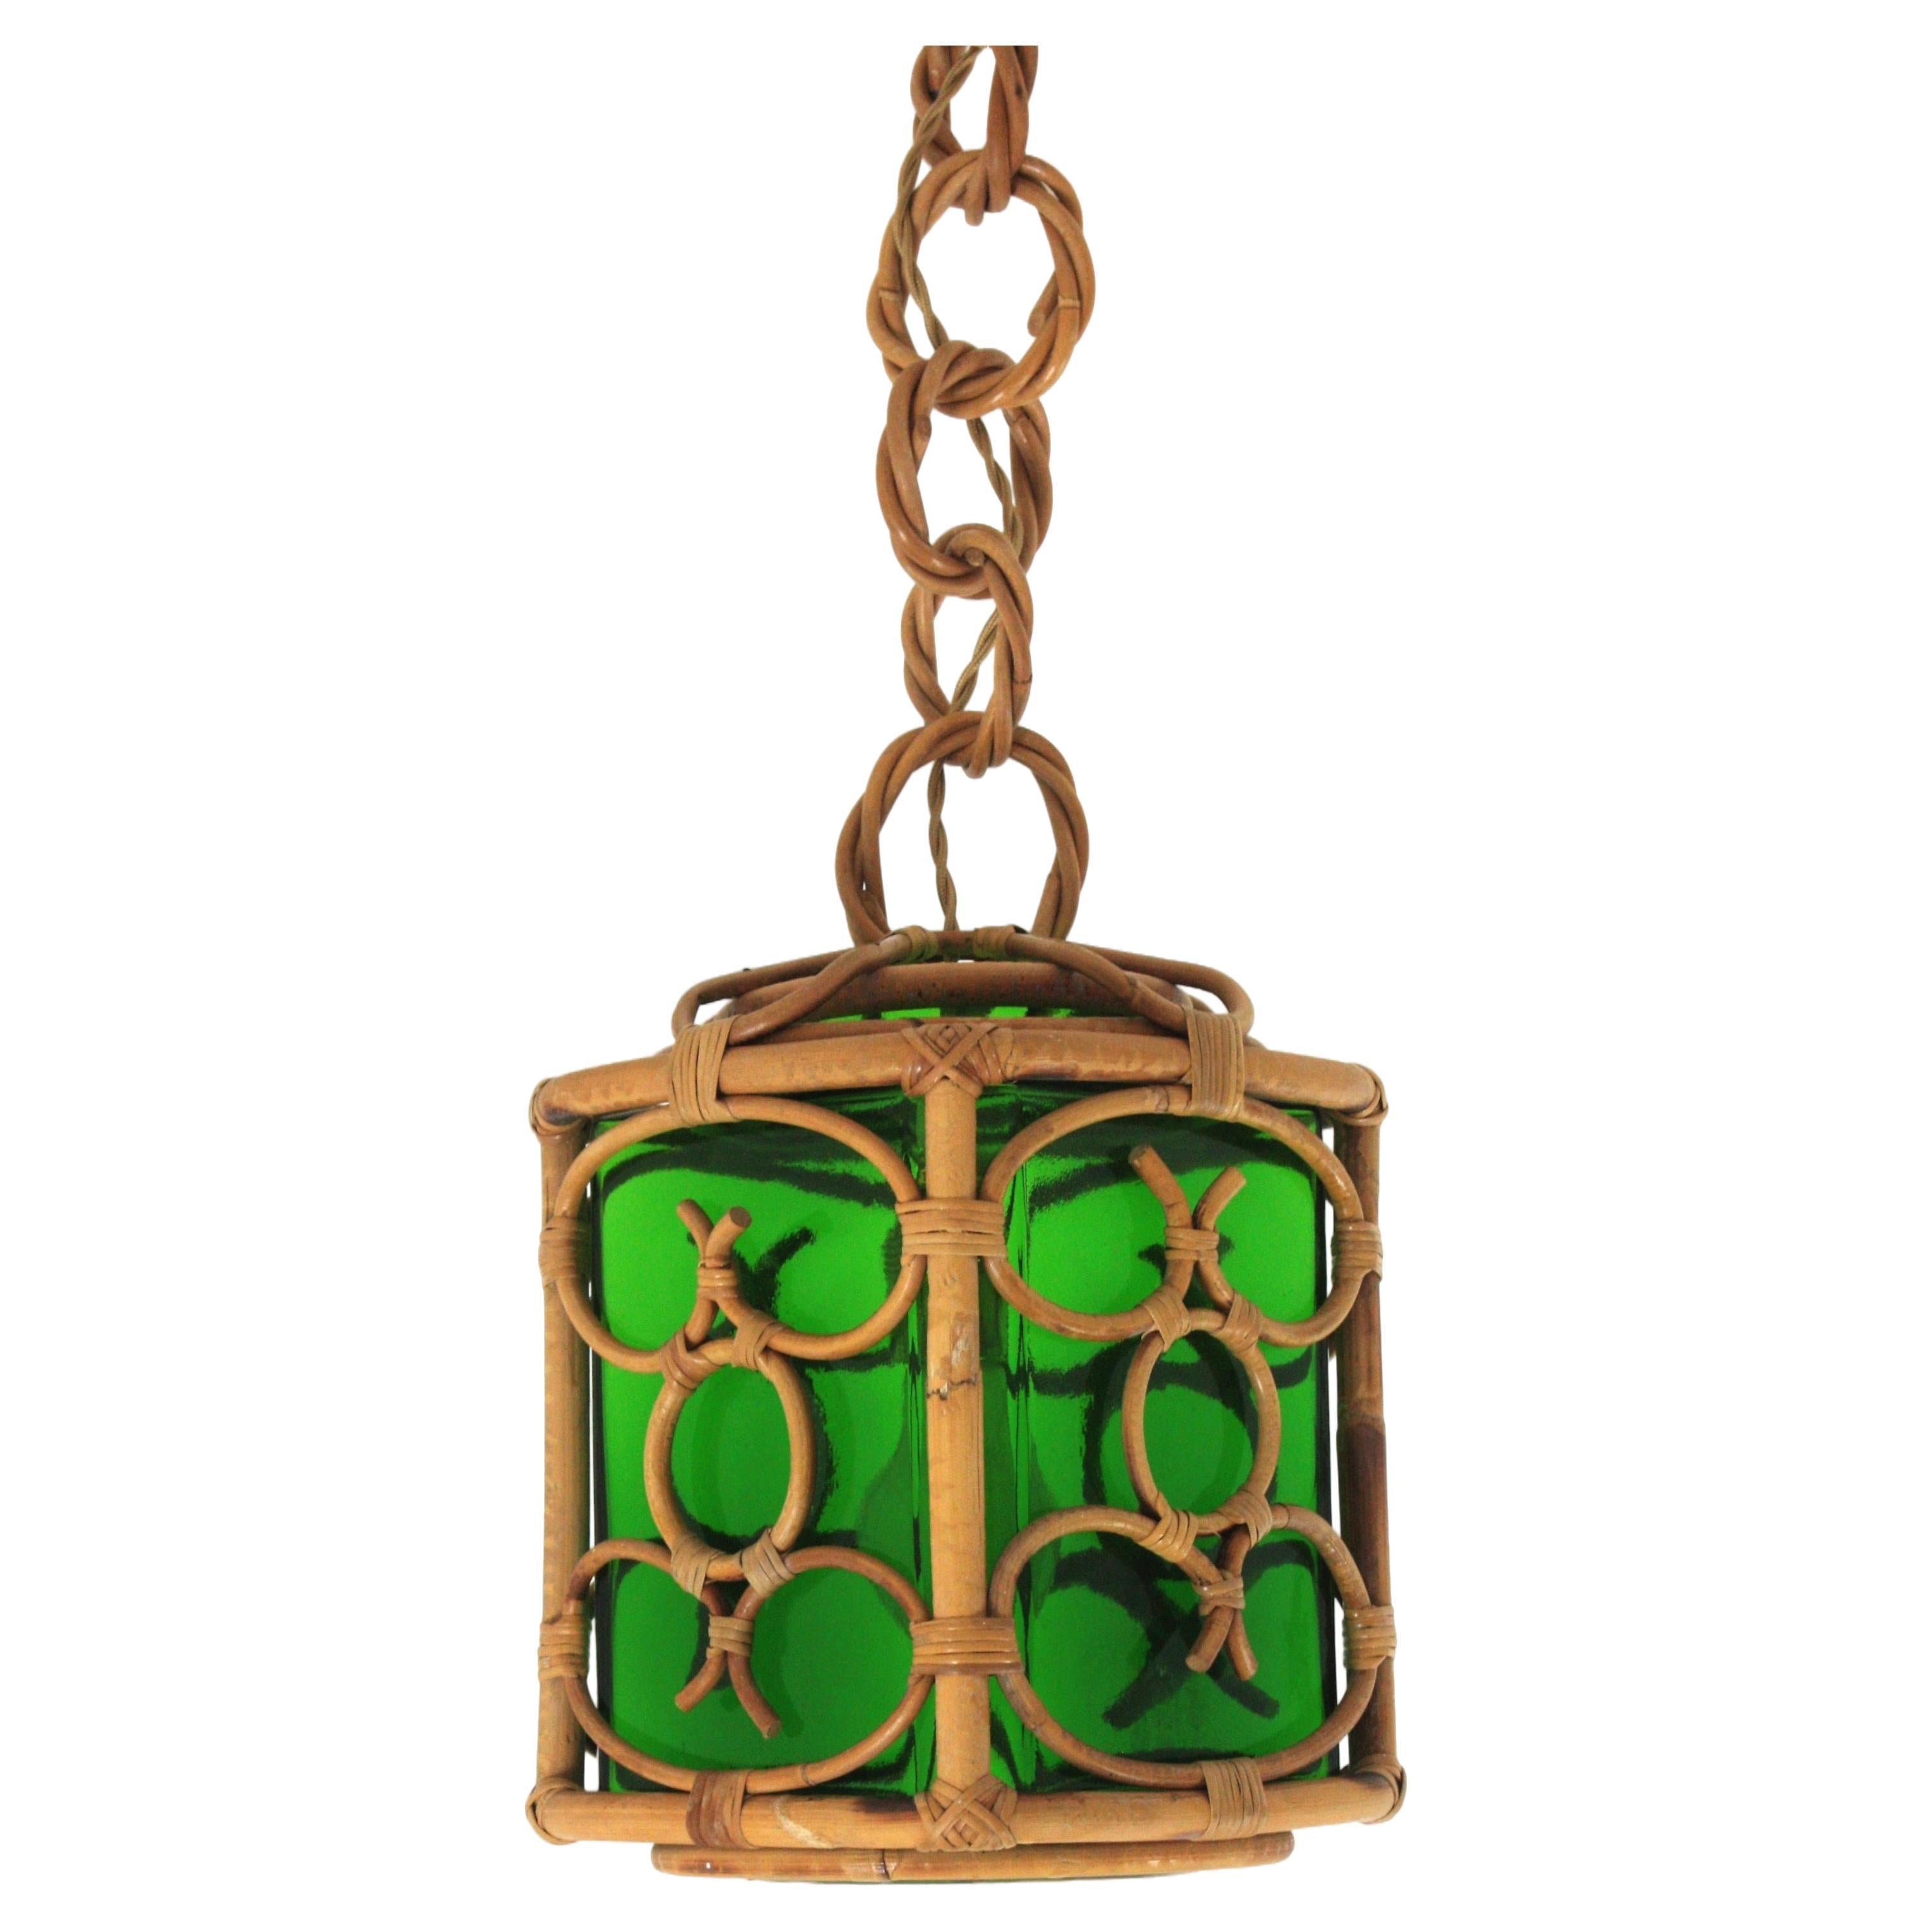 Lanterne suspendue française avec abat-jour en verre vert et design chinoiseries